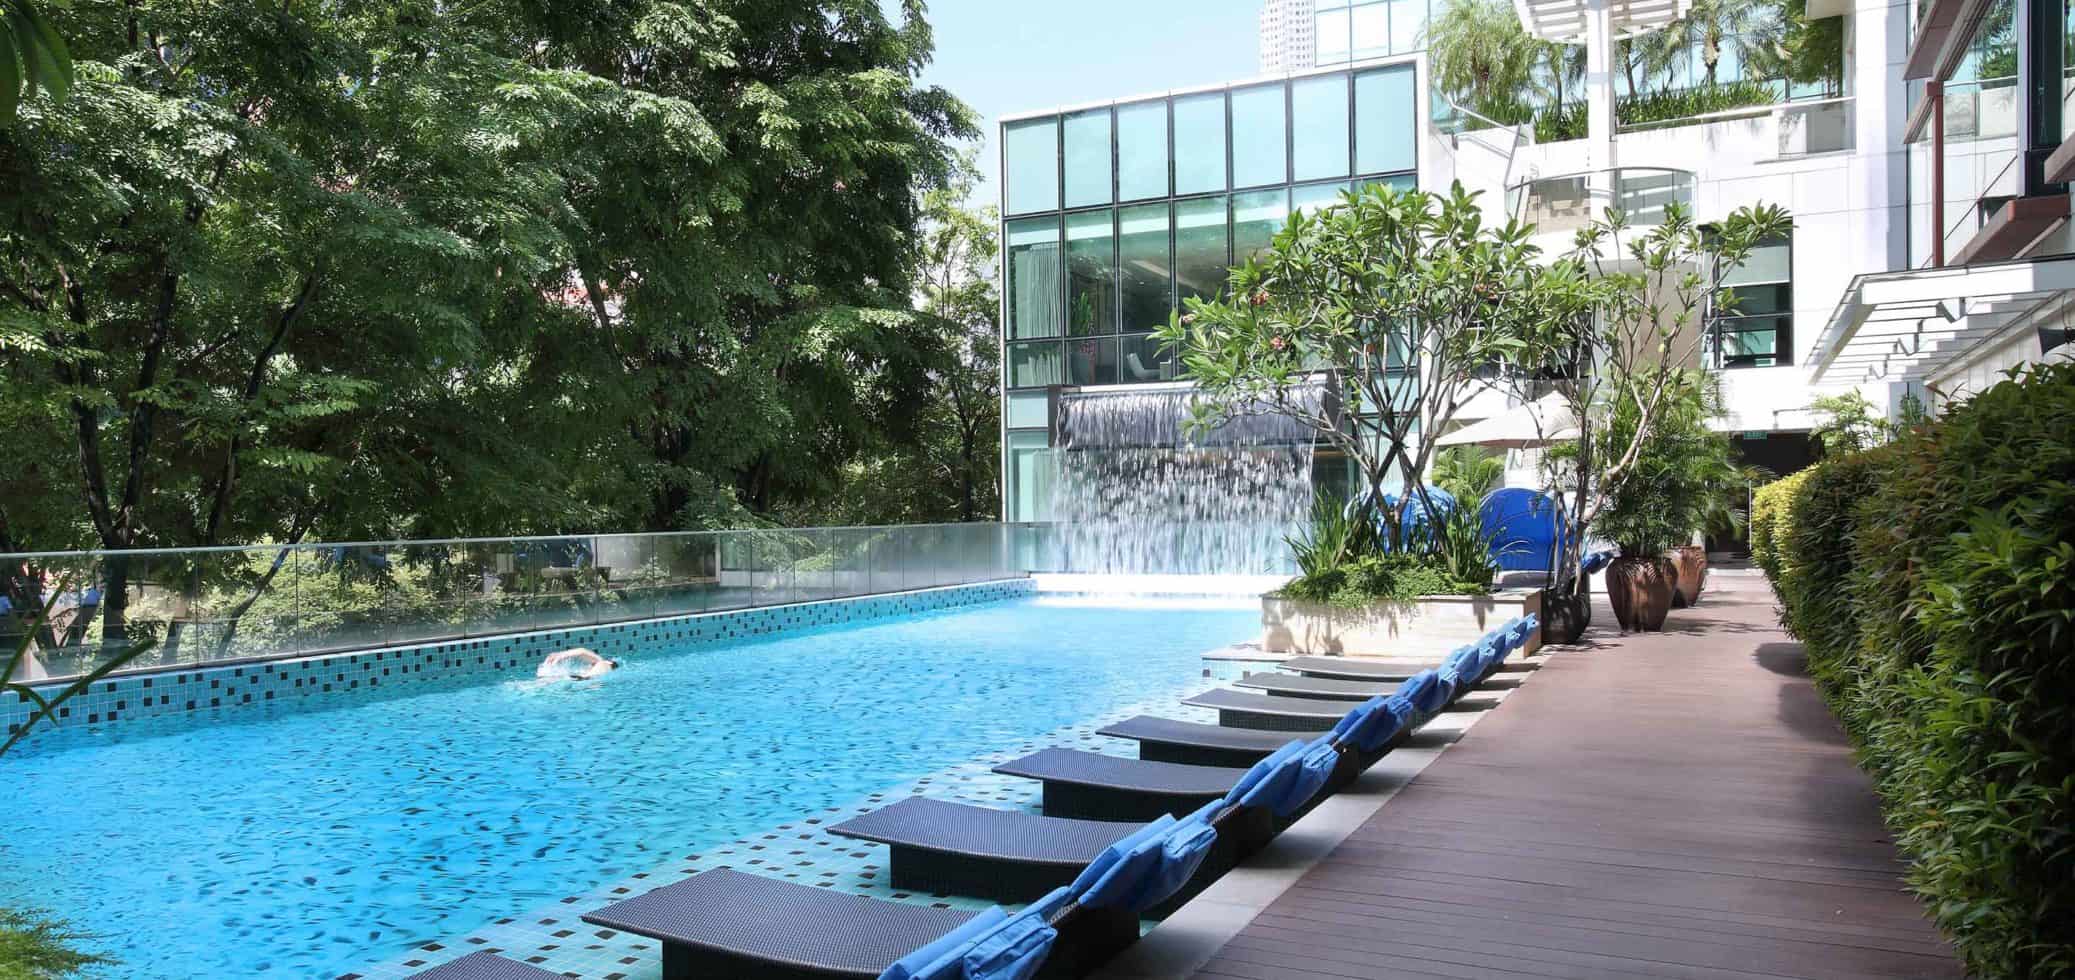 Swimming Pool Park Regis Singapore